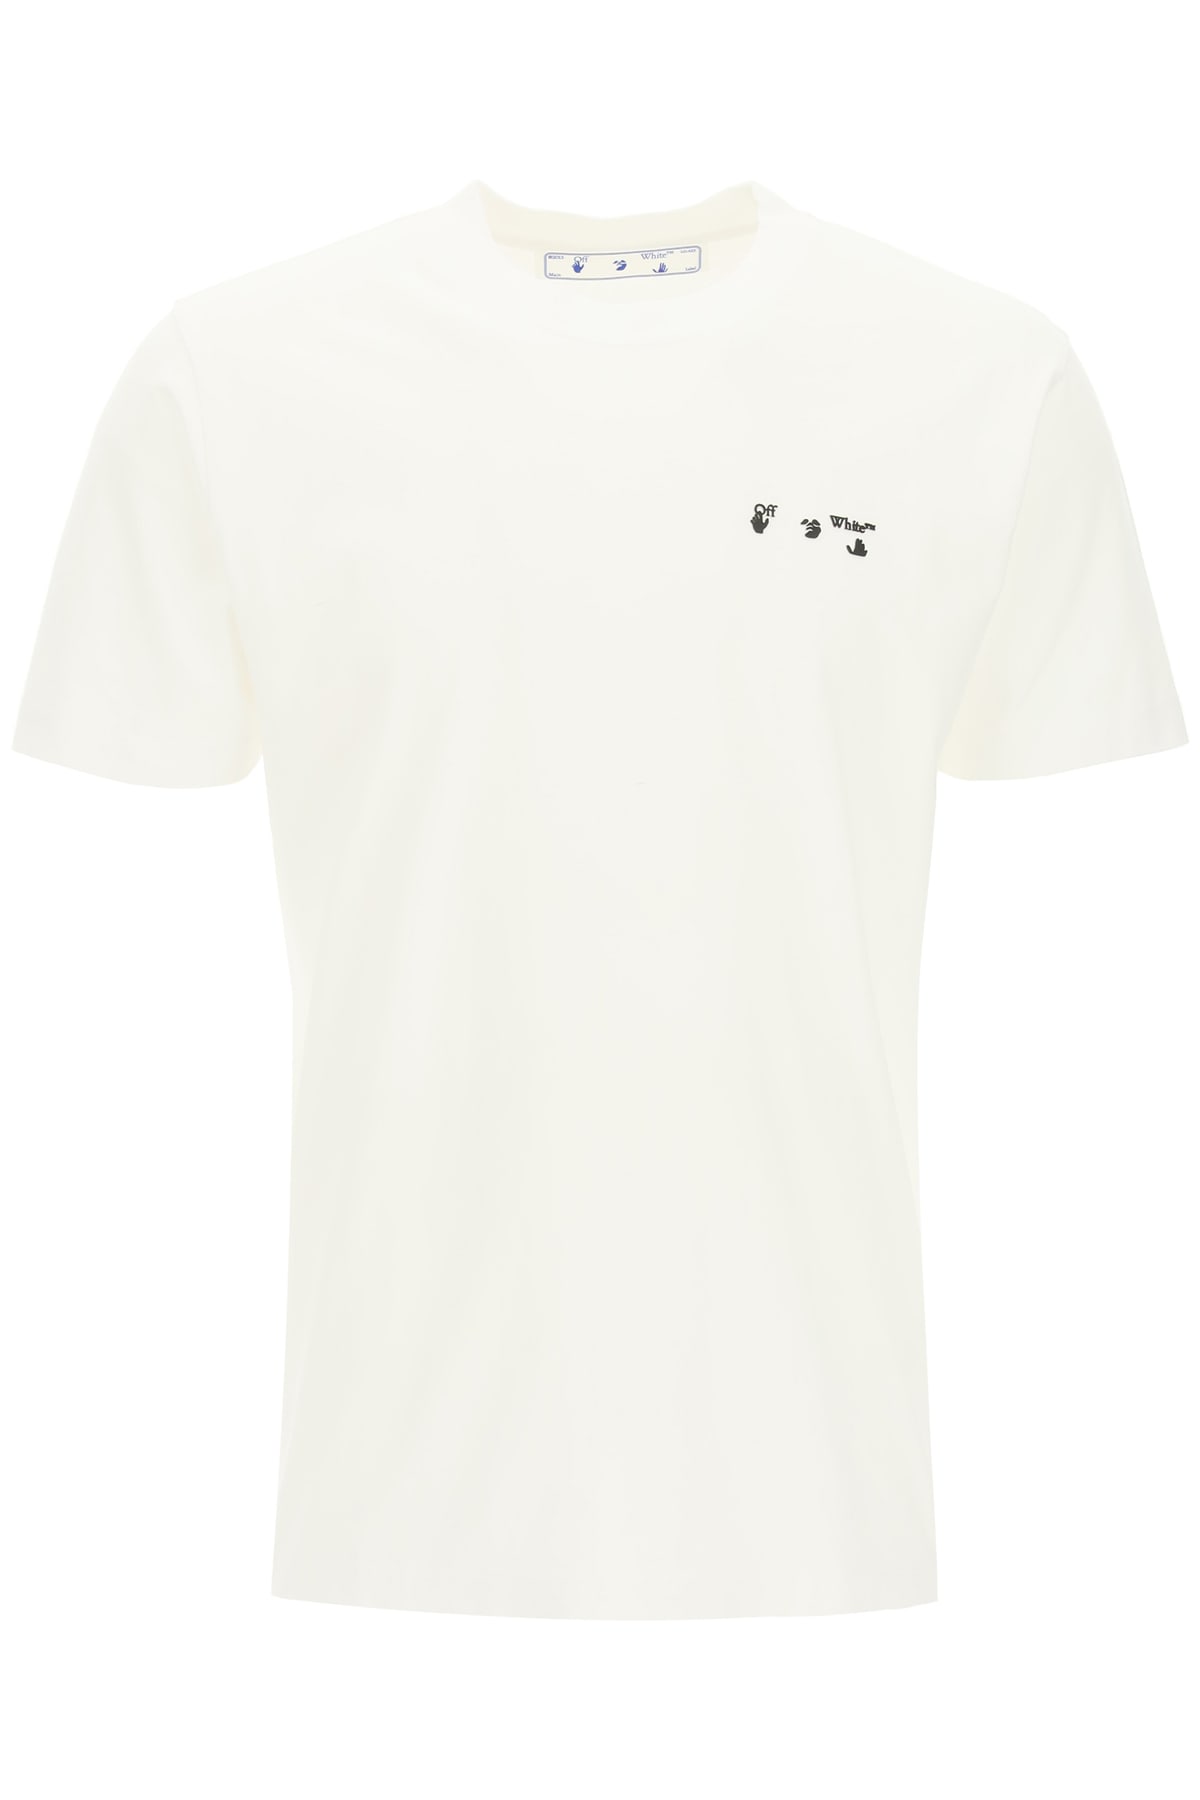 Off-White Ow Logo T-shirt